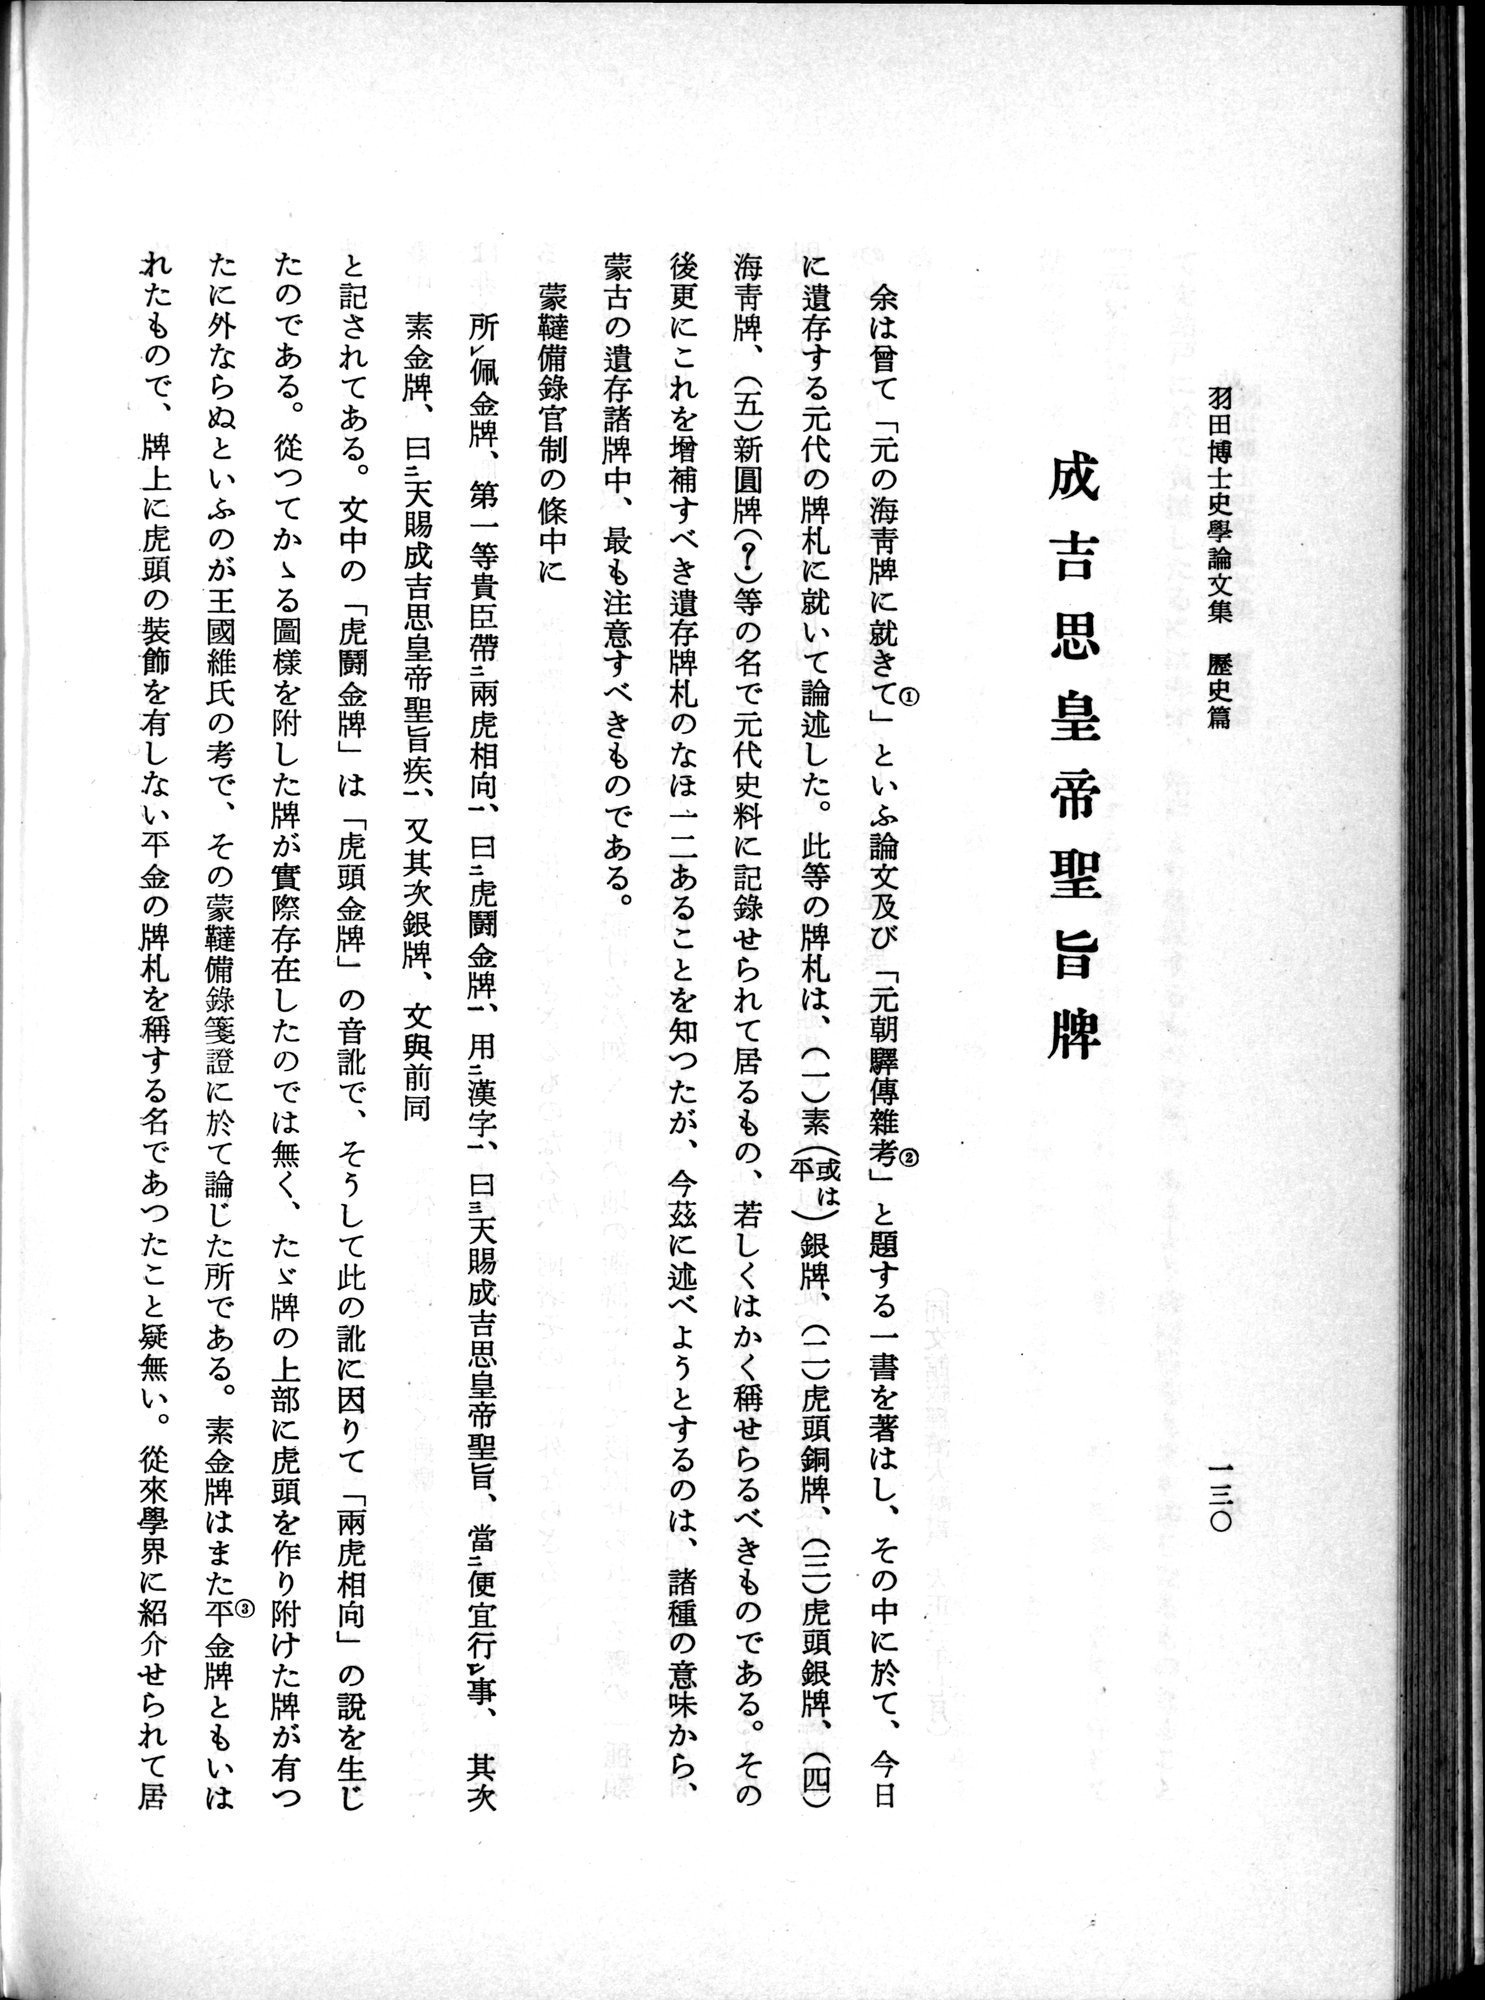 羽田博士史学論文集 : vol.1 / Page 168 (Grayscale High Resolution Image)